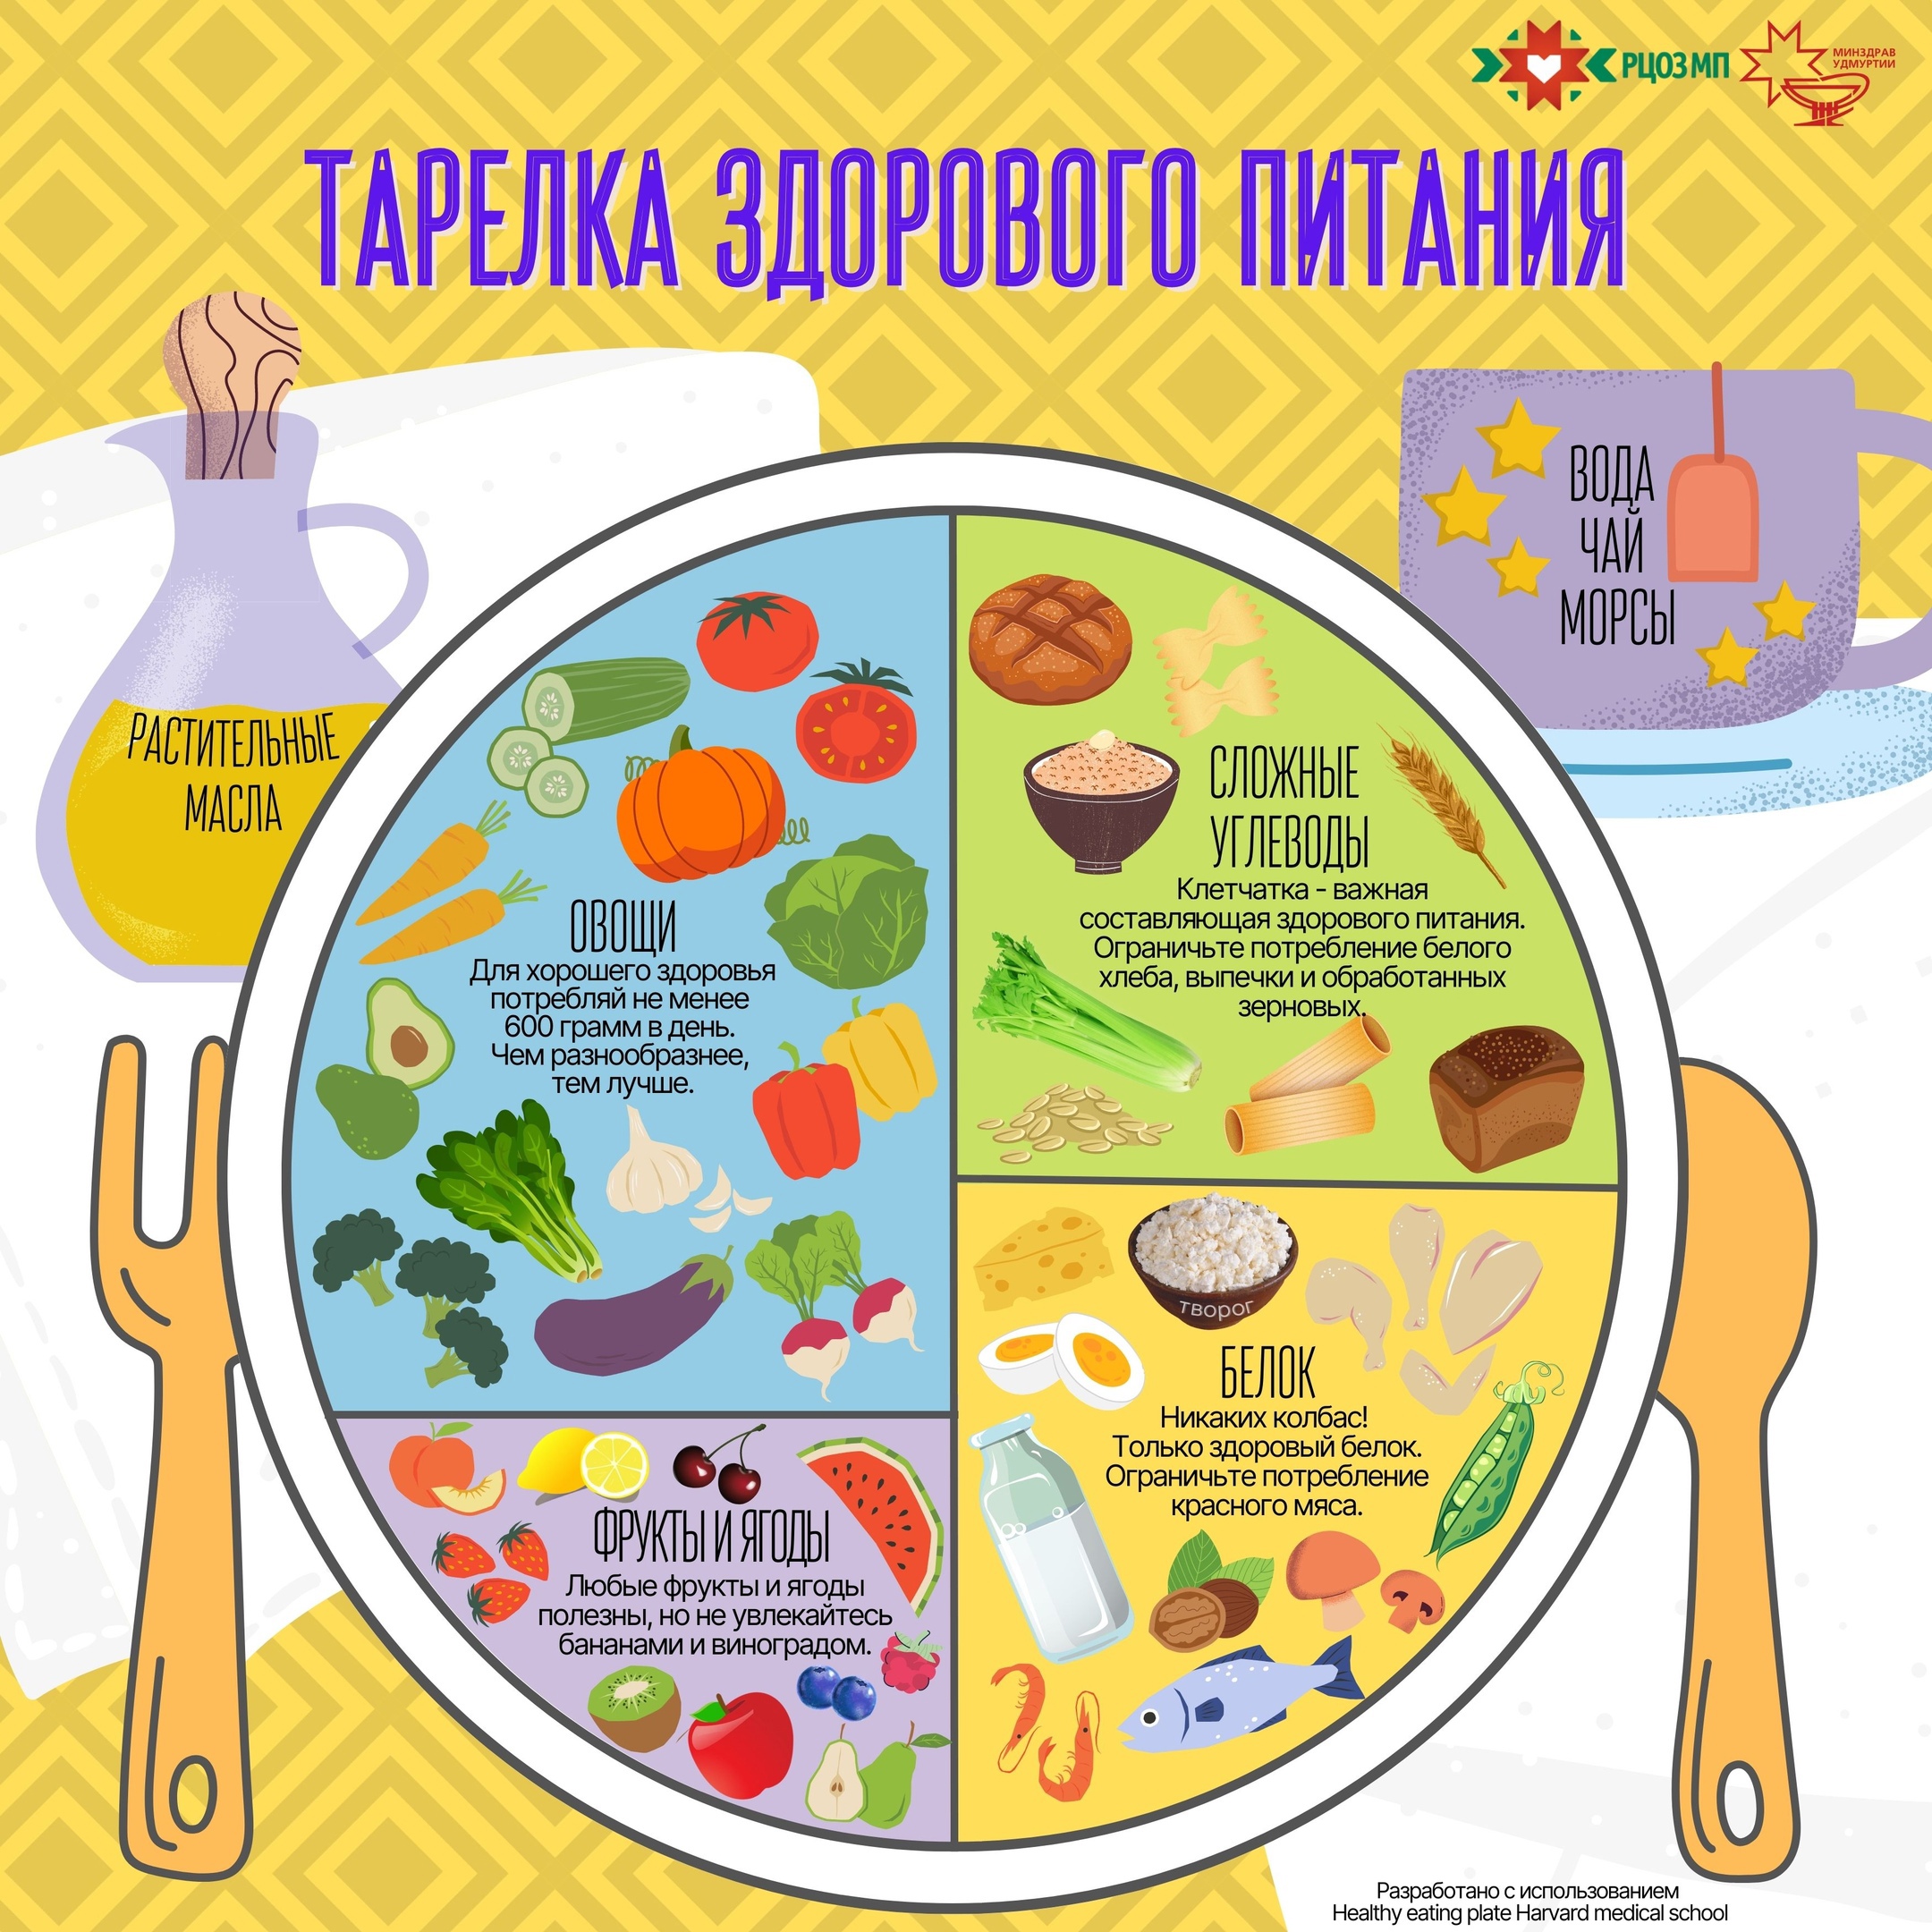 В период с 10 по 16 апреля 2023 г. в России проводится Неделя подсчета калорий..